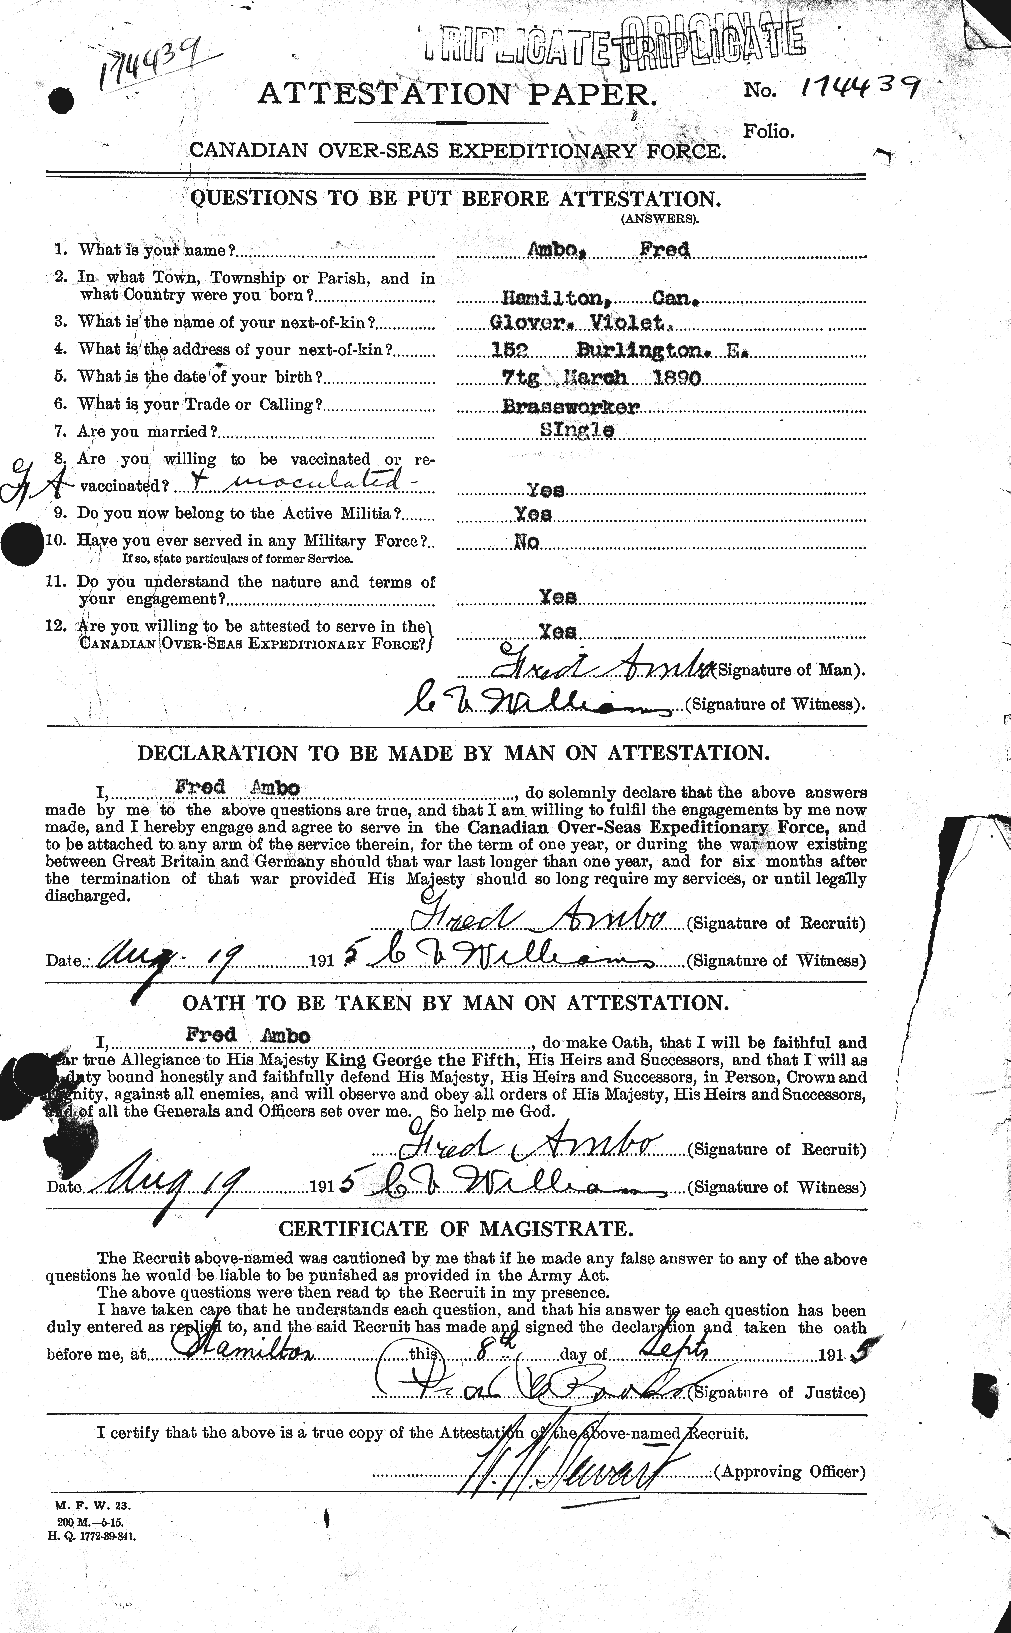 Dossiers du Personnel de la Première Guerre mondiale - CEC 208964a